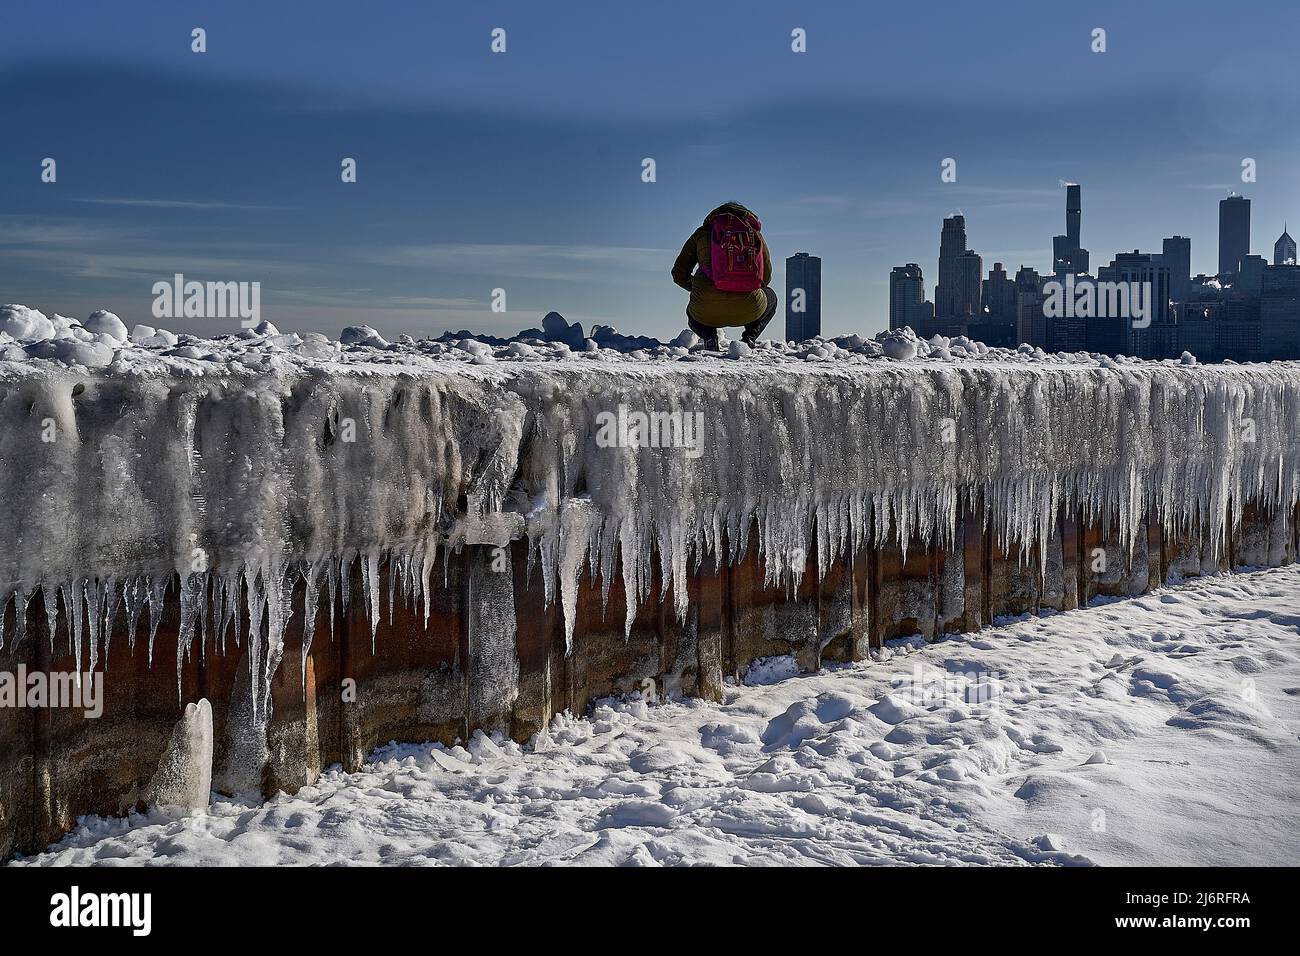 vista en ángulo bajo del fotógrafo incidental y el hielo y la nieve, y la ciudad en el fondo Foto de stock